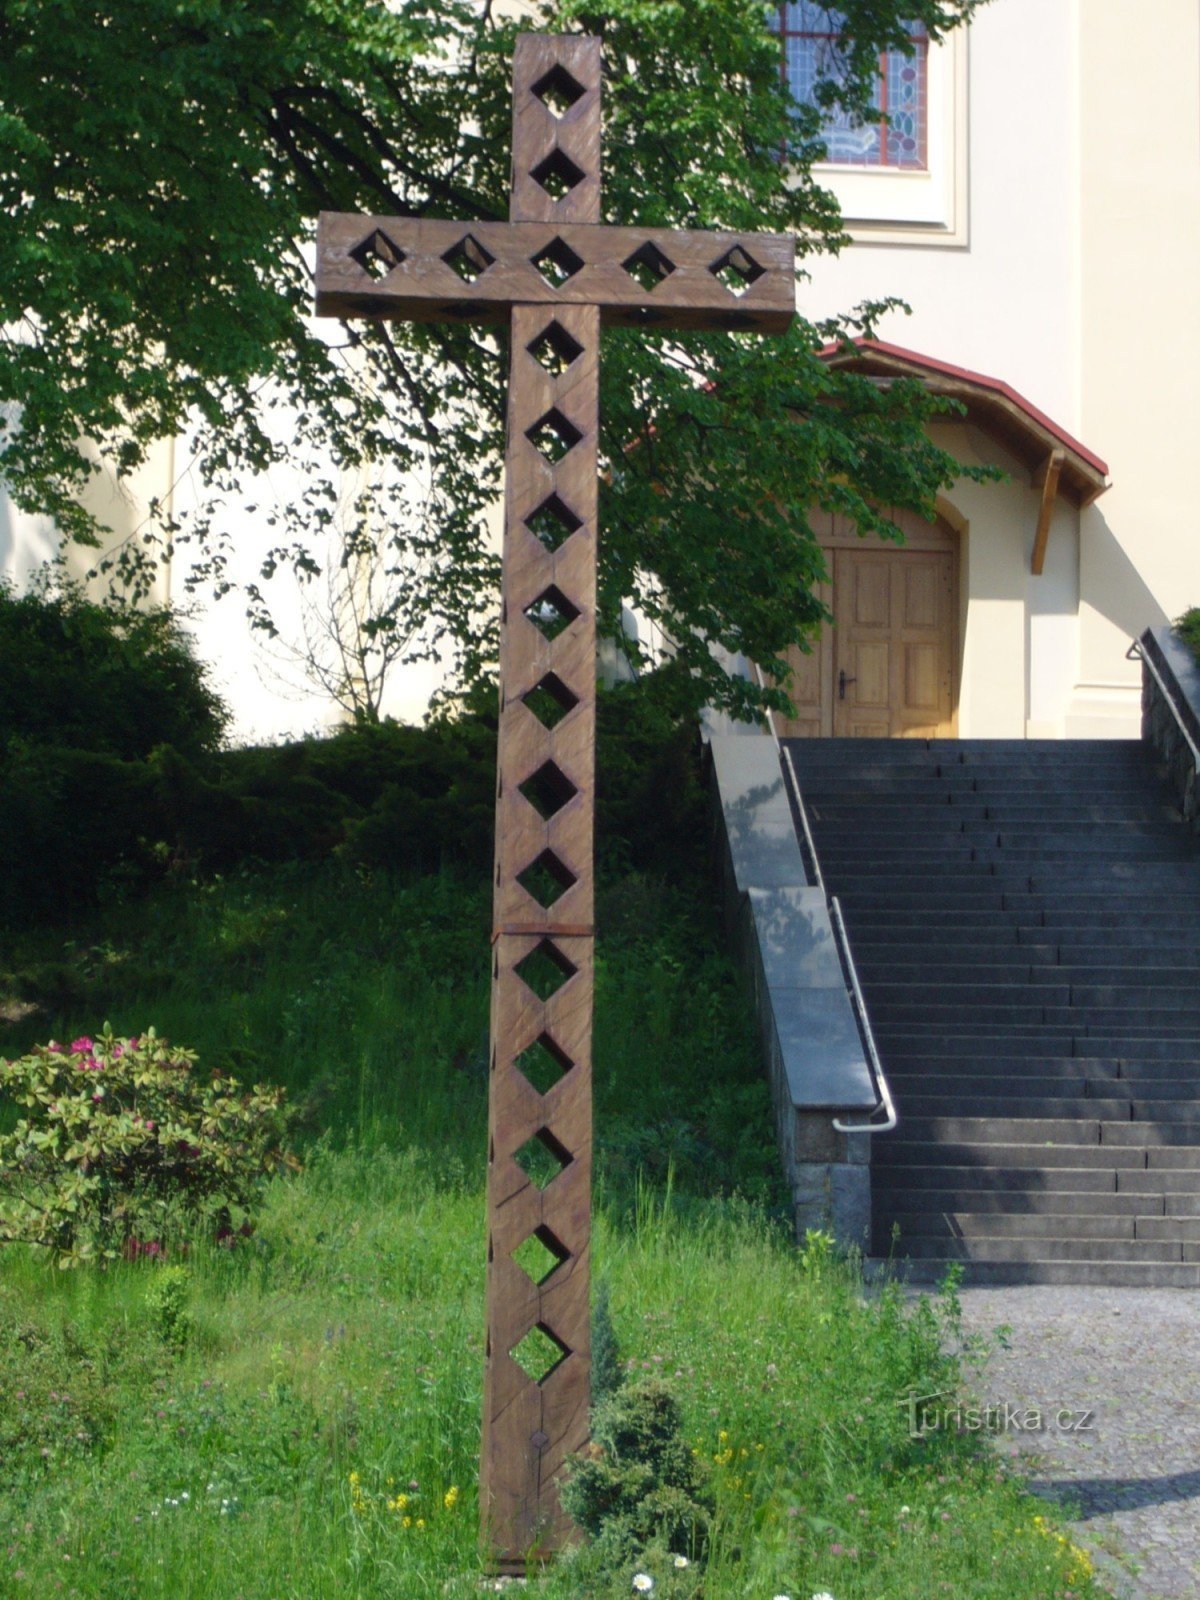 Plesná - kruis voor de kerk van St. Jakub